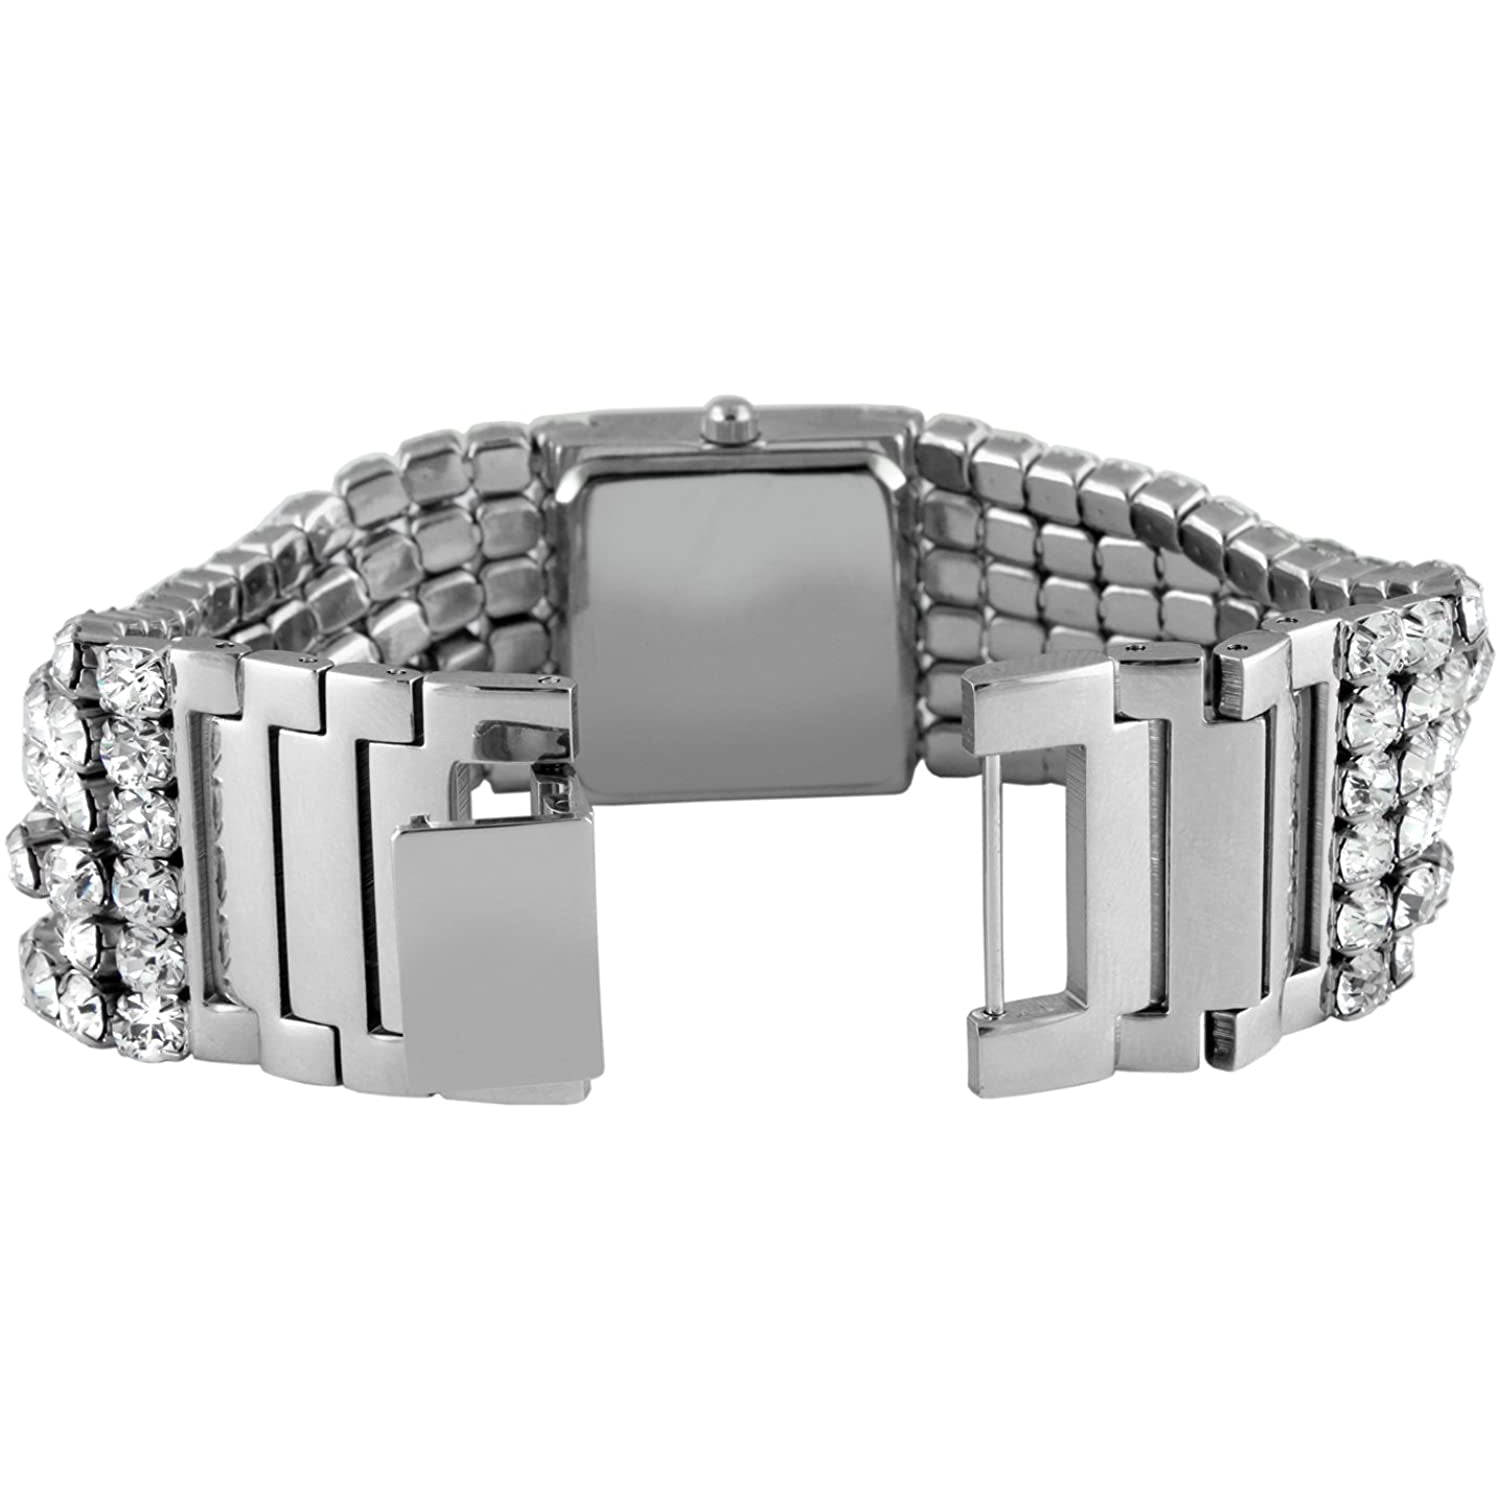 Q Timex 36mm Stainless Steel Bracelet Watch - TW2U95500 | Timex US